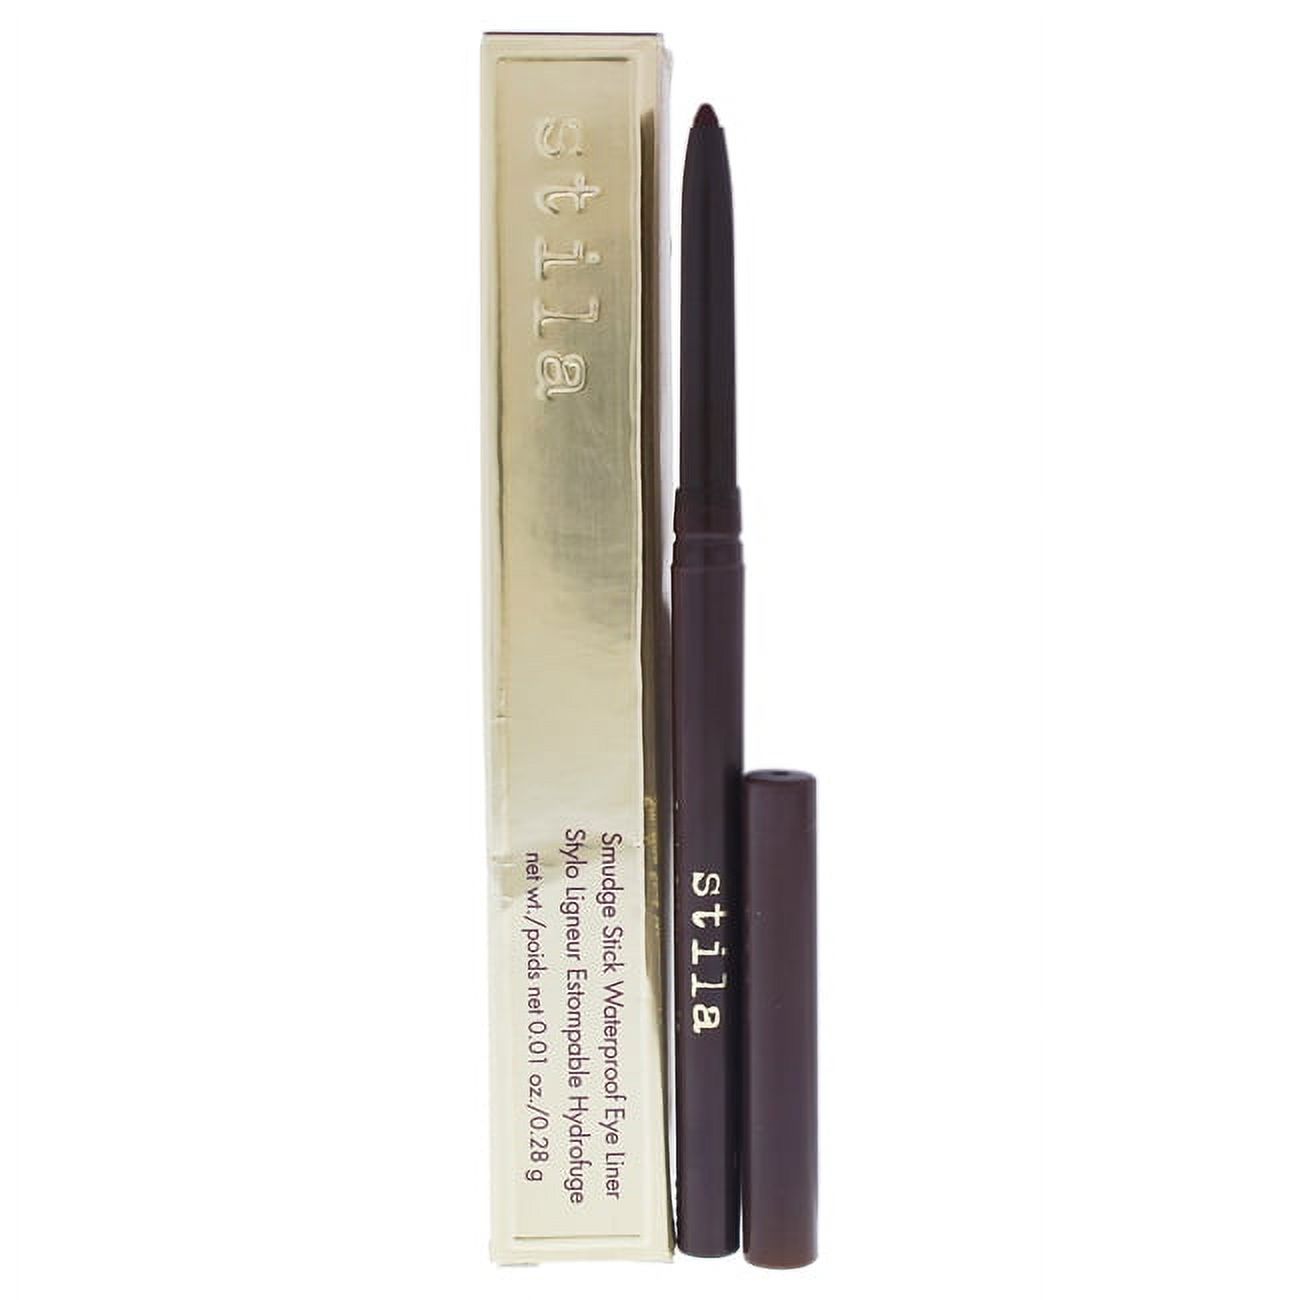 Stila Smudge Stick Waterproof Eye Liner - Spice Eyeliner 0.01 oz - image 1 of 2